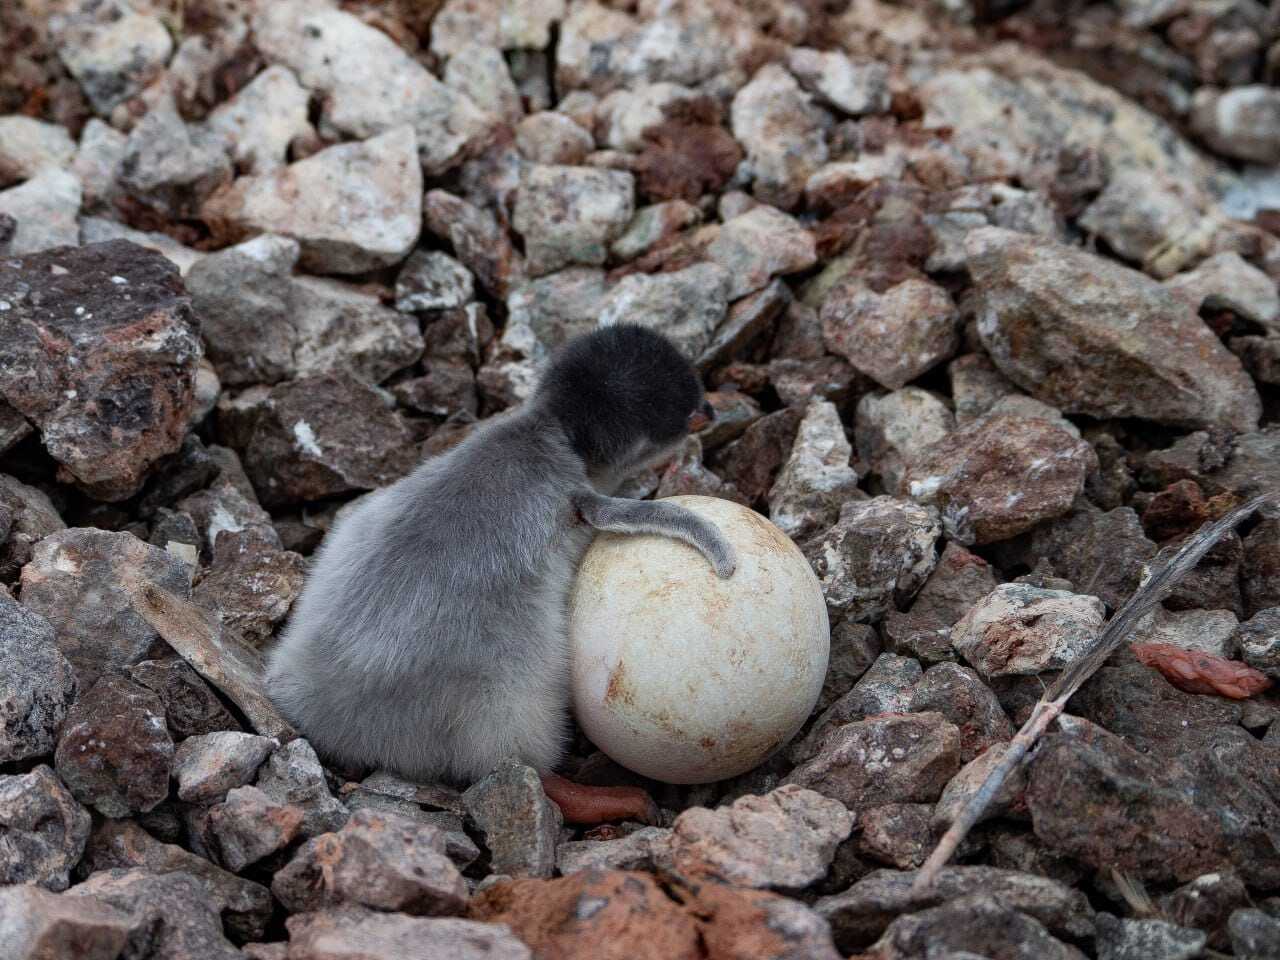 Біля станції "Академік Вернадський" почався бебі-бум: на світ з’явилися пташенята субантарктичних пінгвінів. Фото